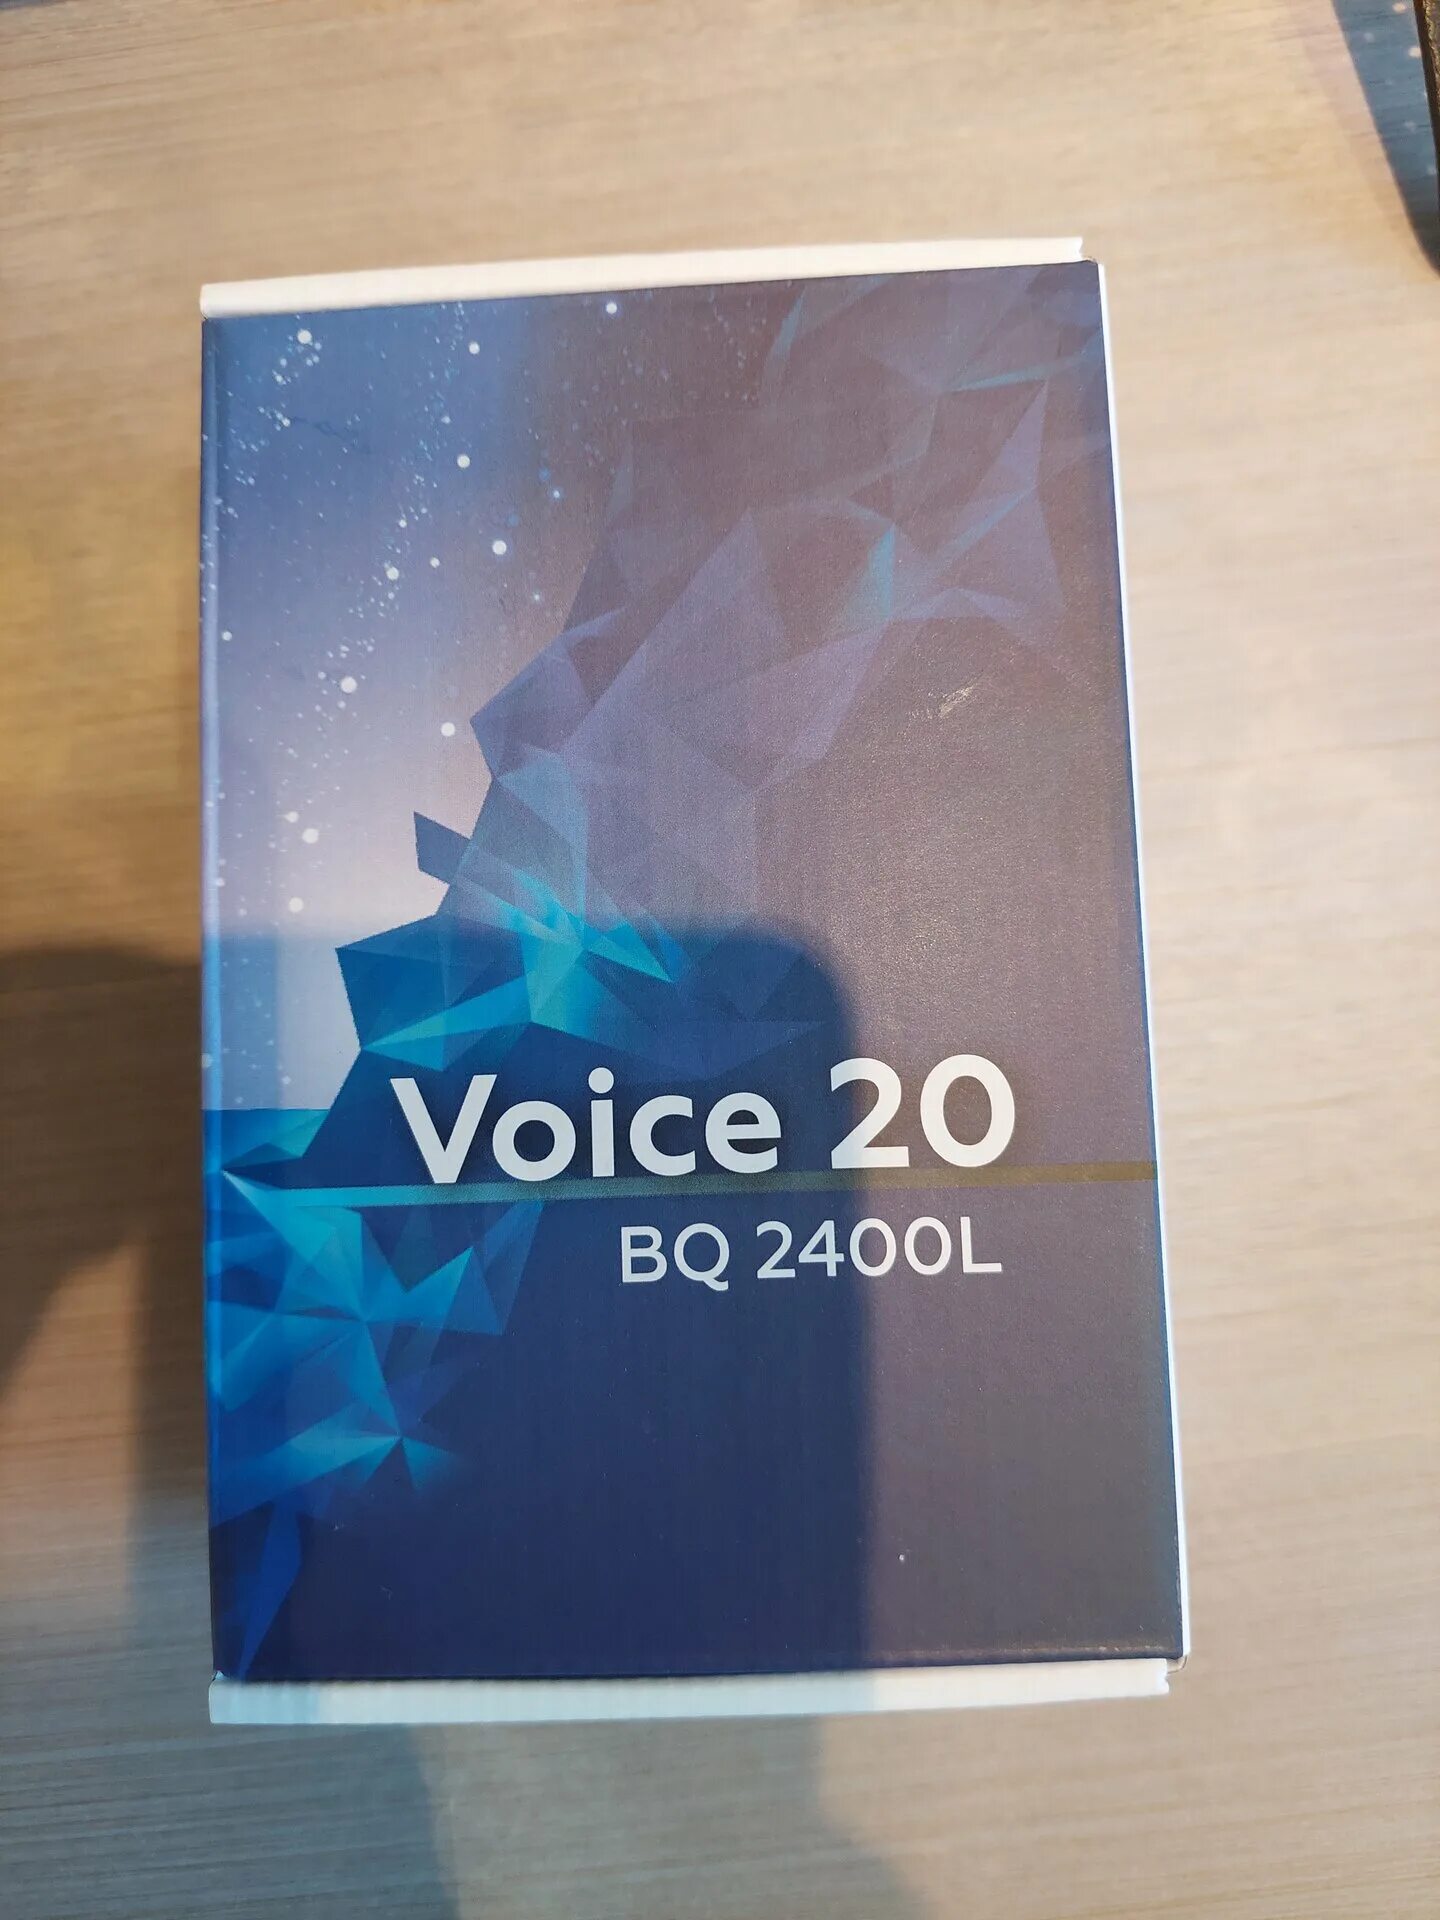 BQ Voice 2400l. BQ 2400l. BQ 2400l Voice 20. BQ M-2400l Voice 20. Bq voice 20